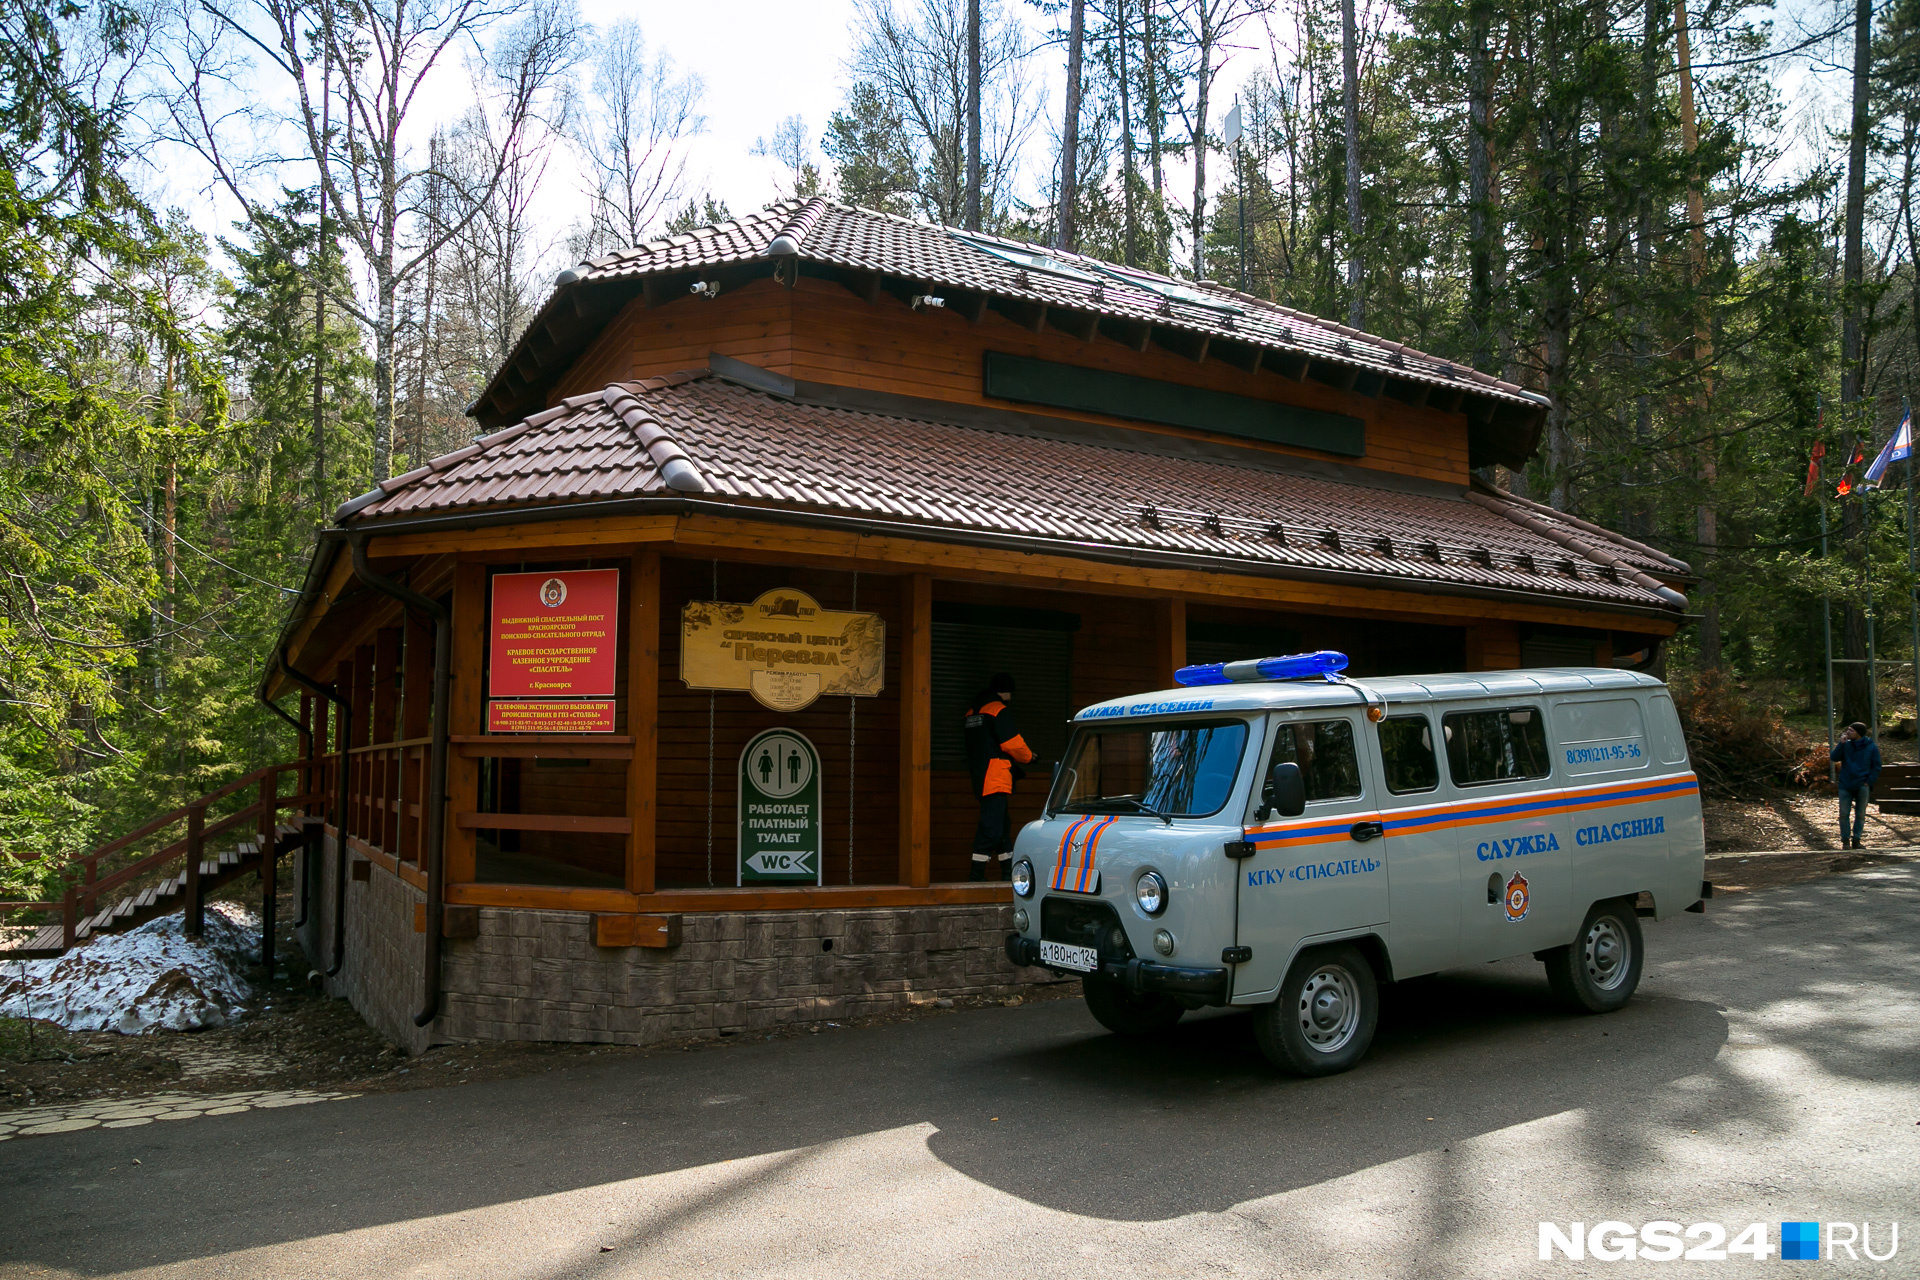 Пункт спасателей на «Столбах» — деревянное здание — открыли летом 2017 года после череды случаев с потерявшимися туристами